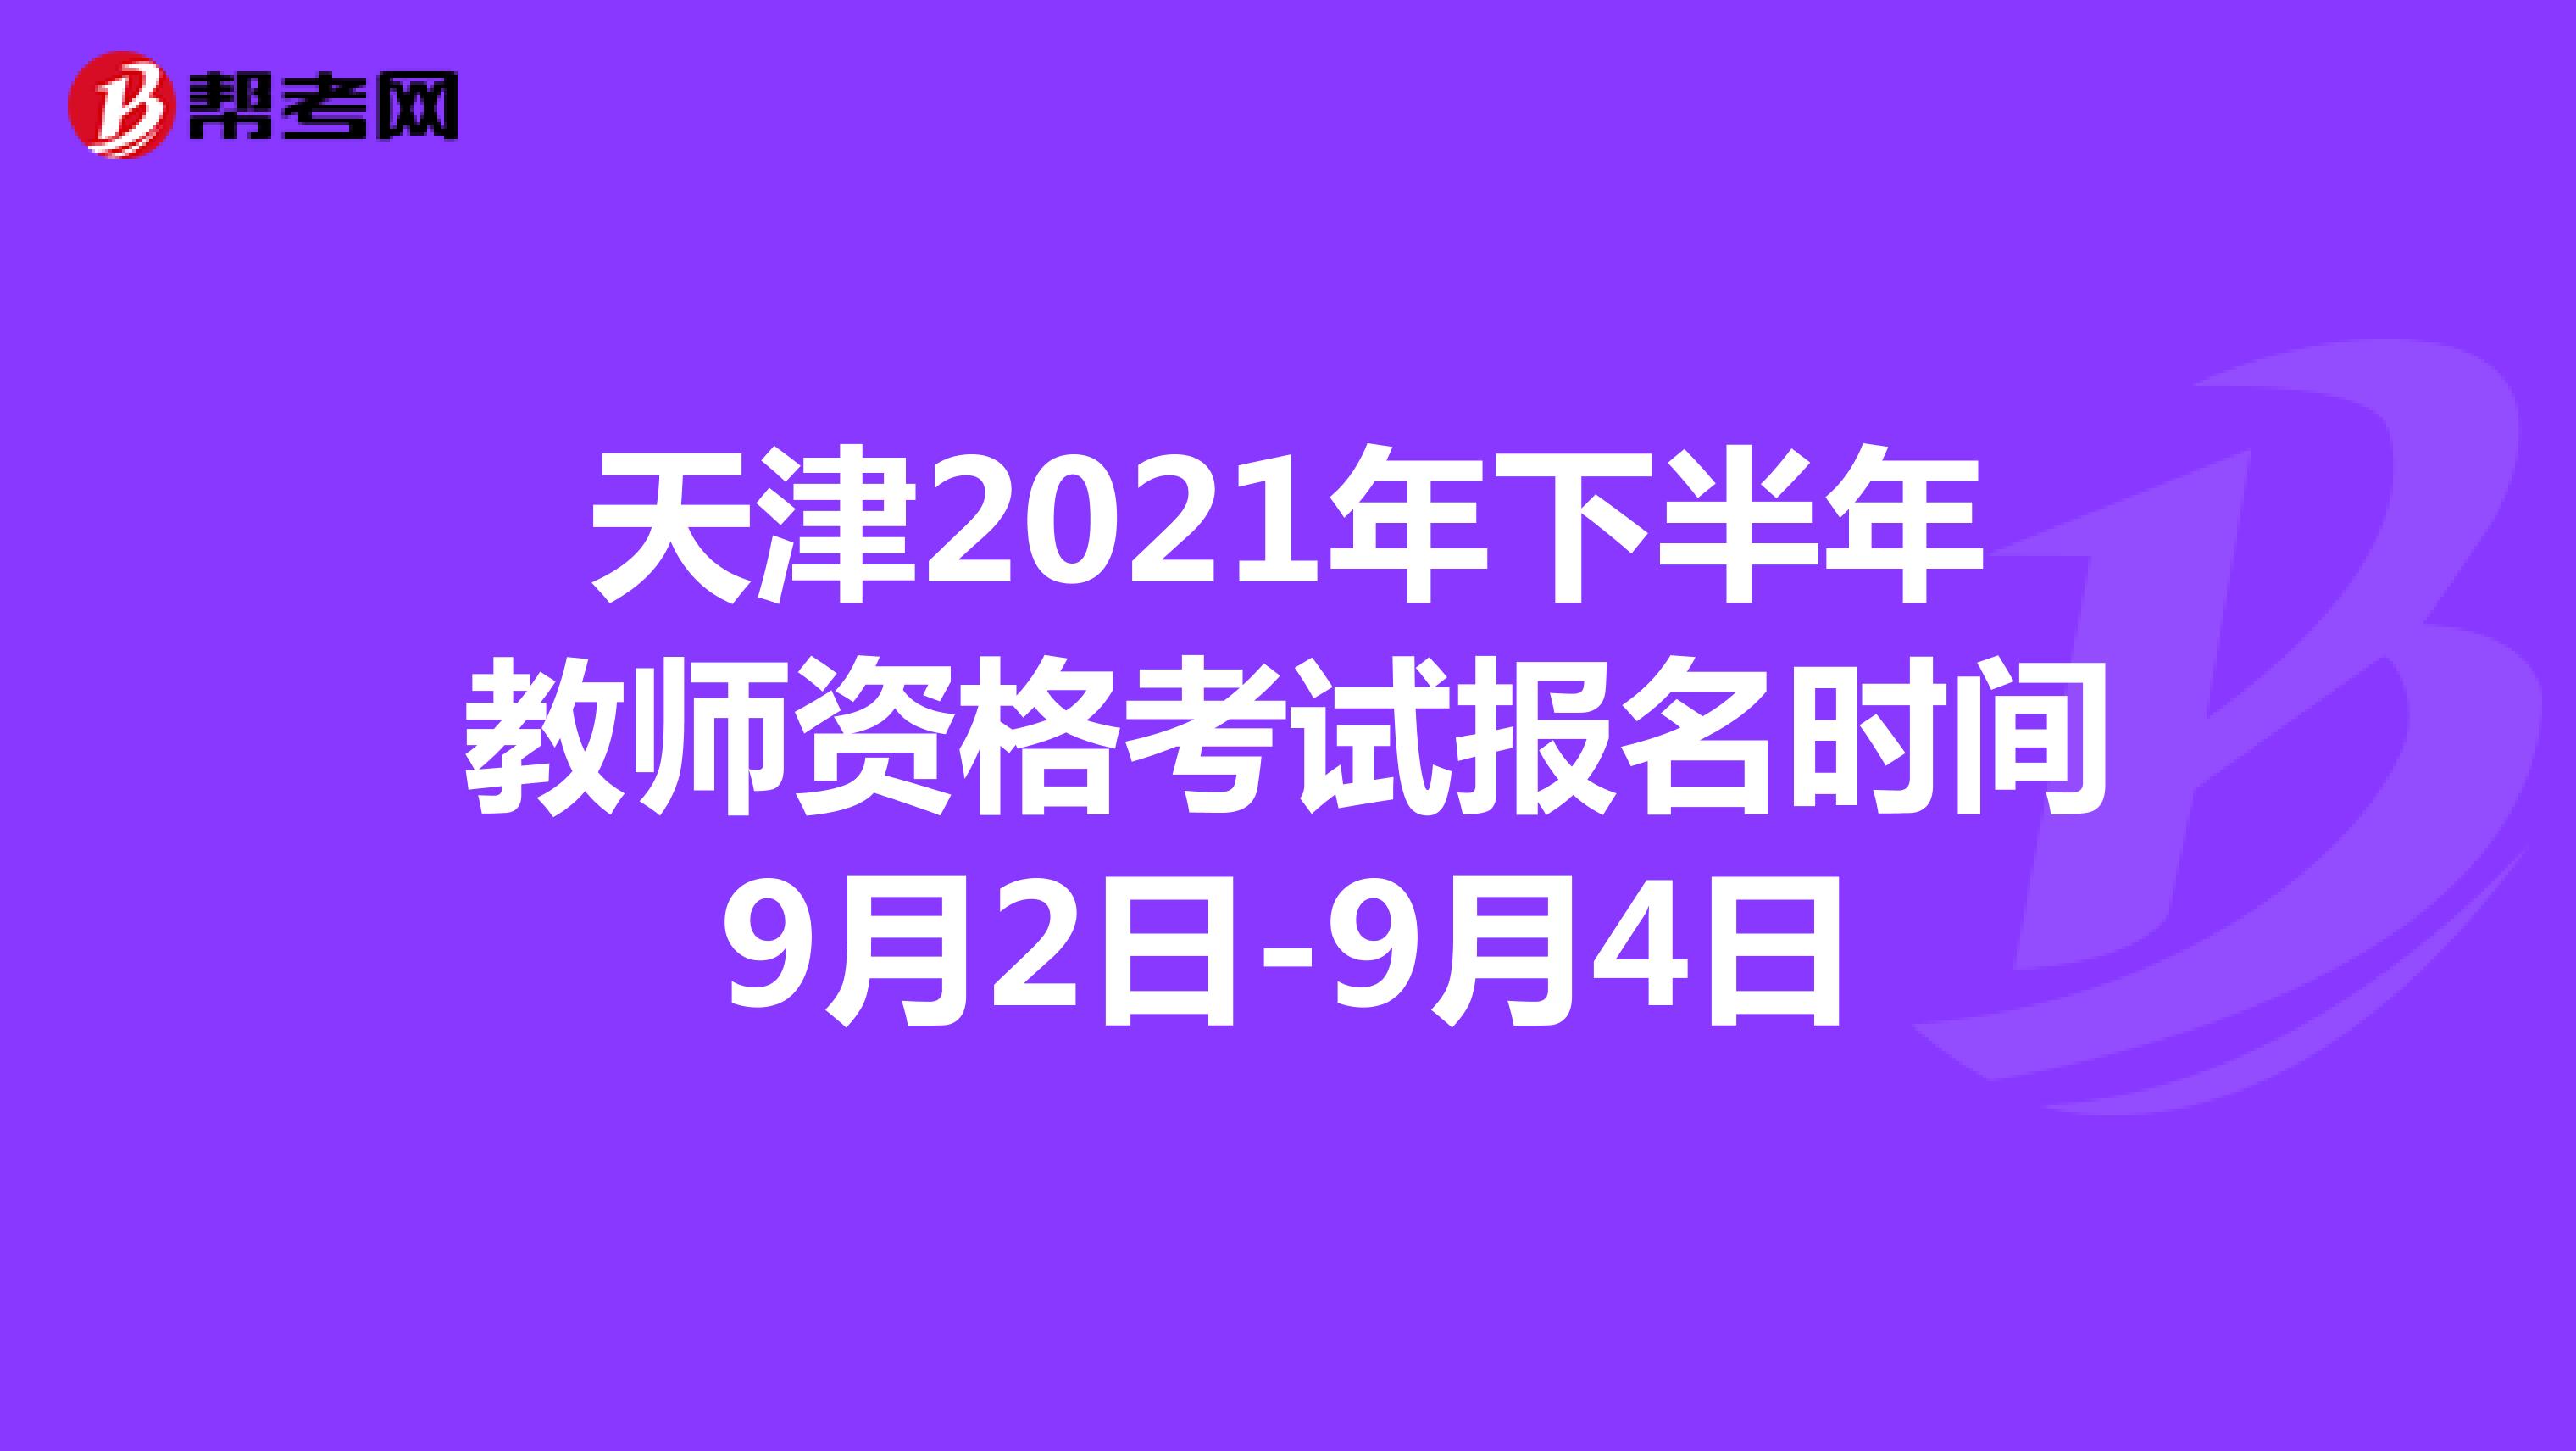 天津2021年下半年教师资格考试报名时间9月2日-9月4日